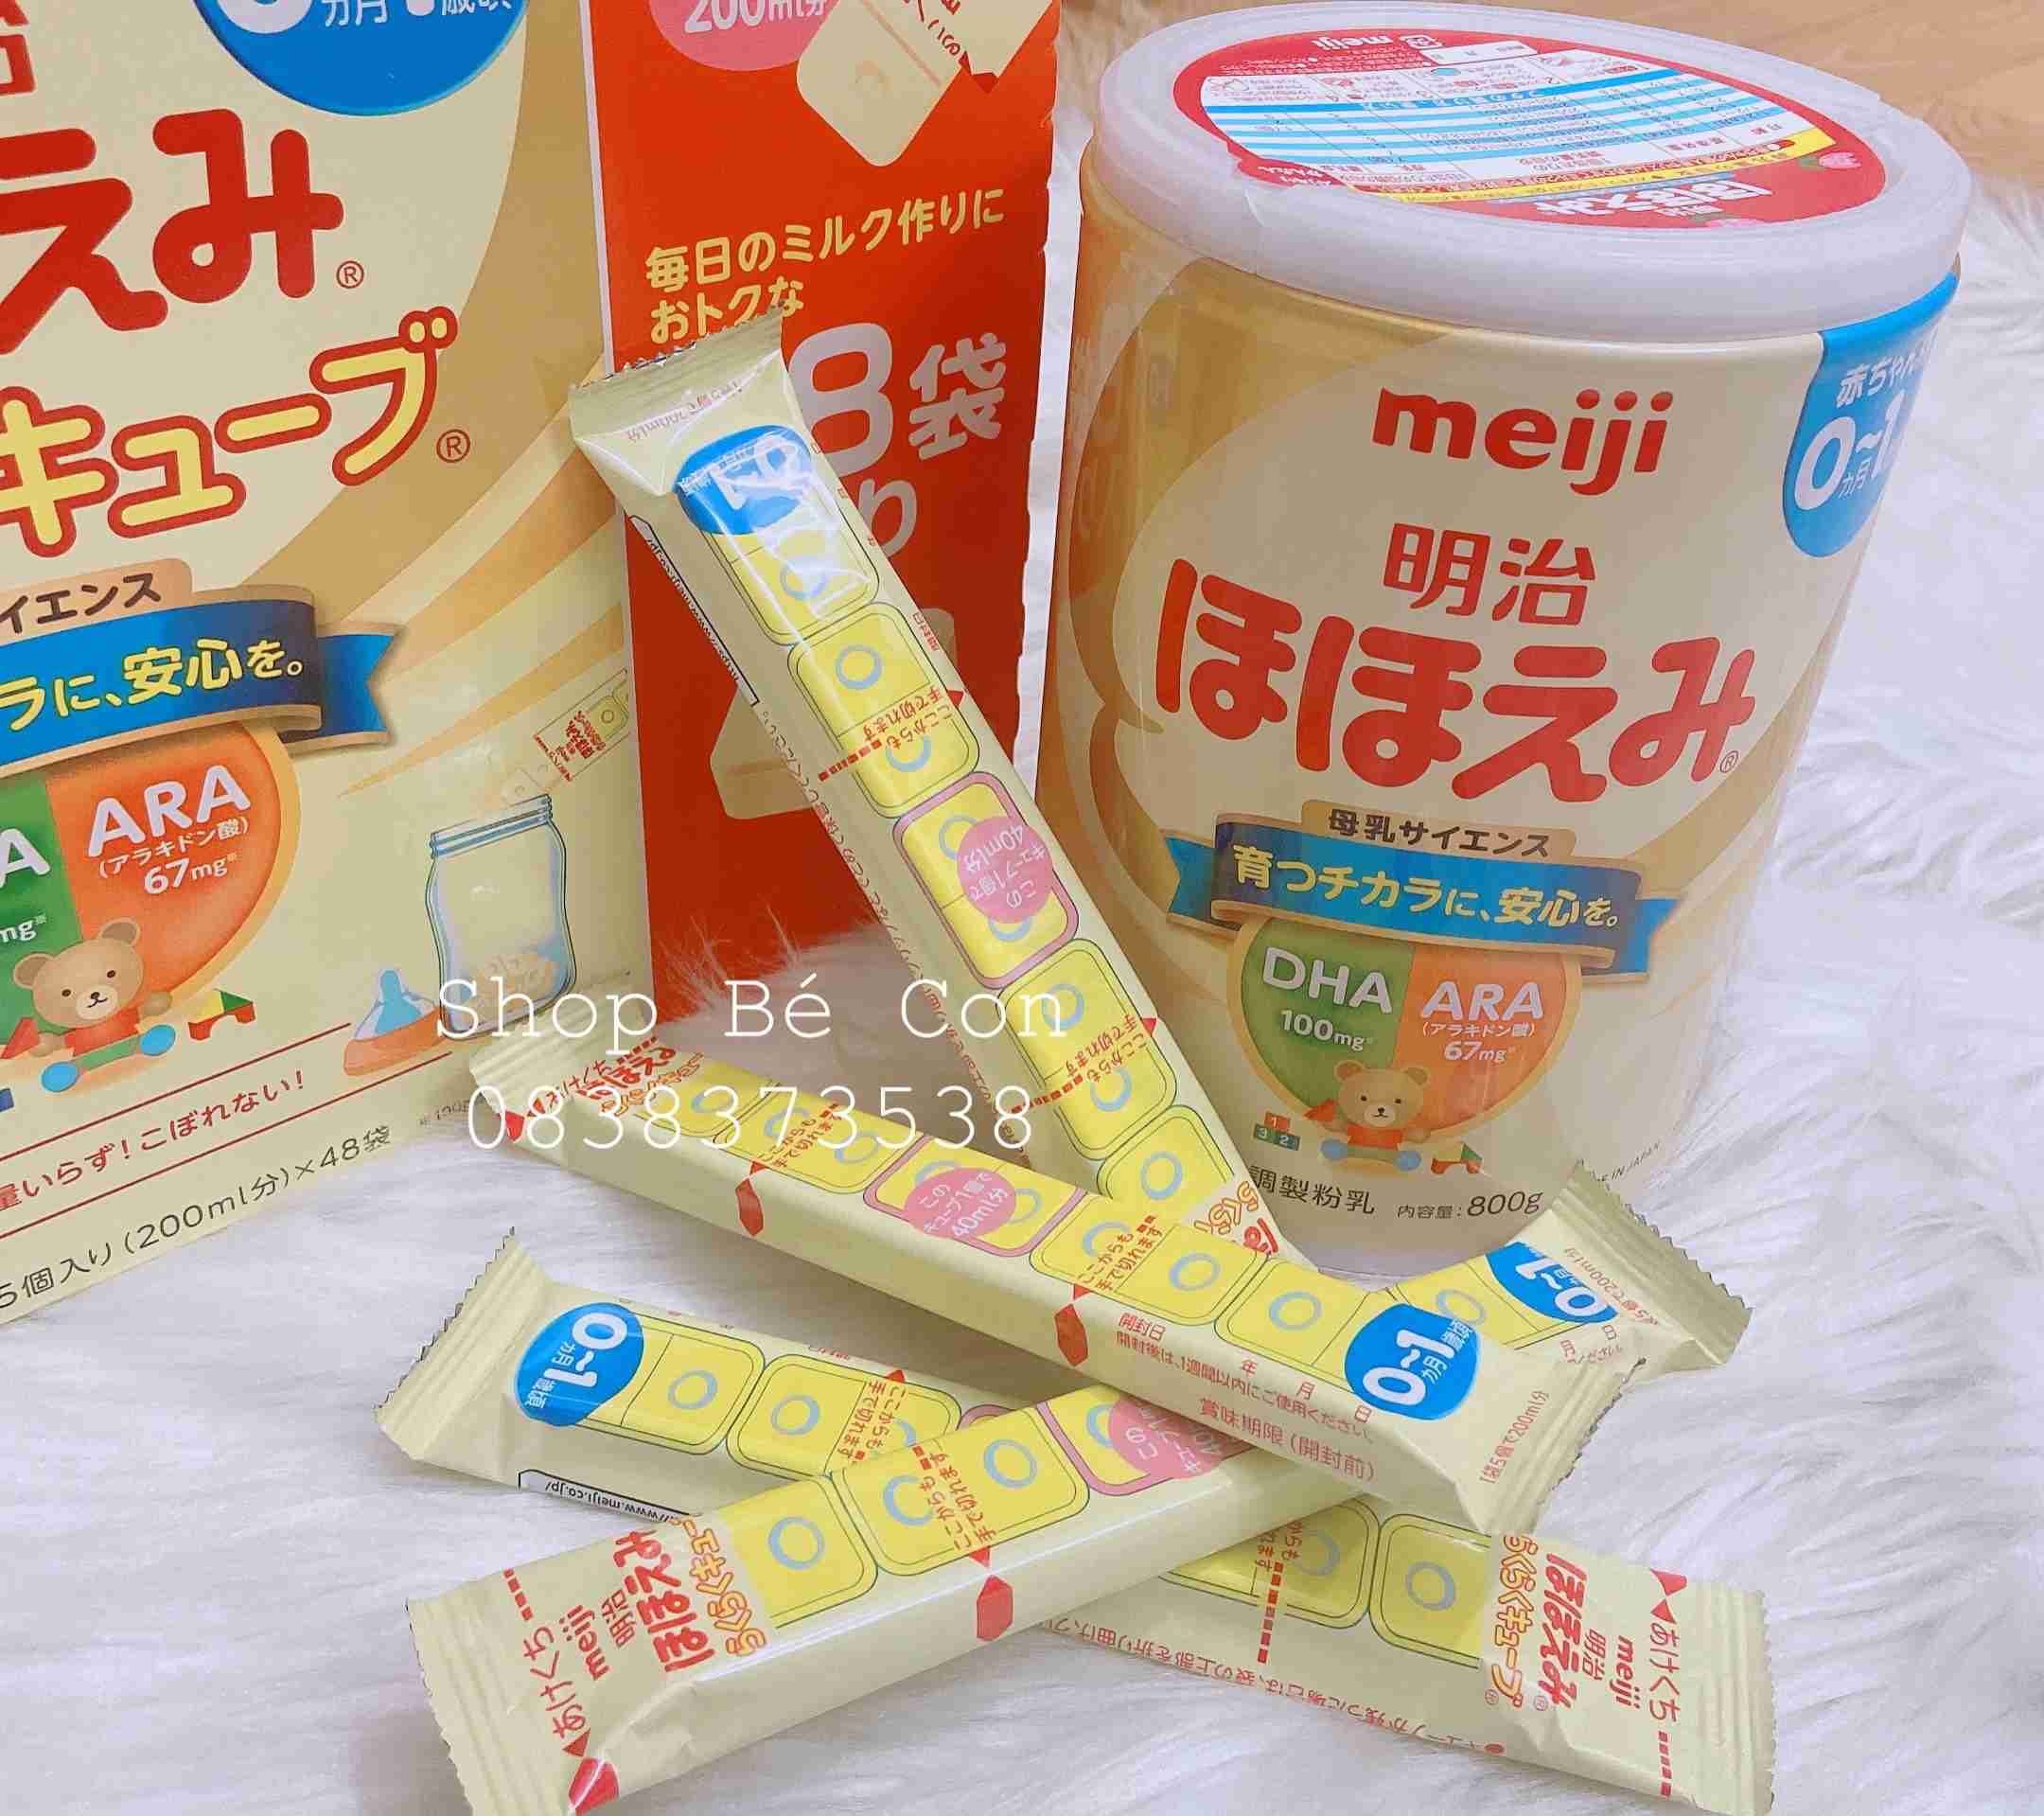 Hướng dẫn chi tiết cách pha sữa Meiji xách tay số 0 dạng bột (Lon 0-1)